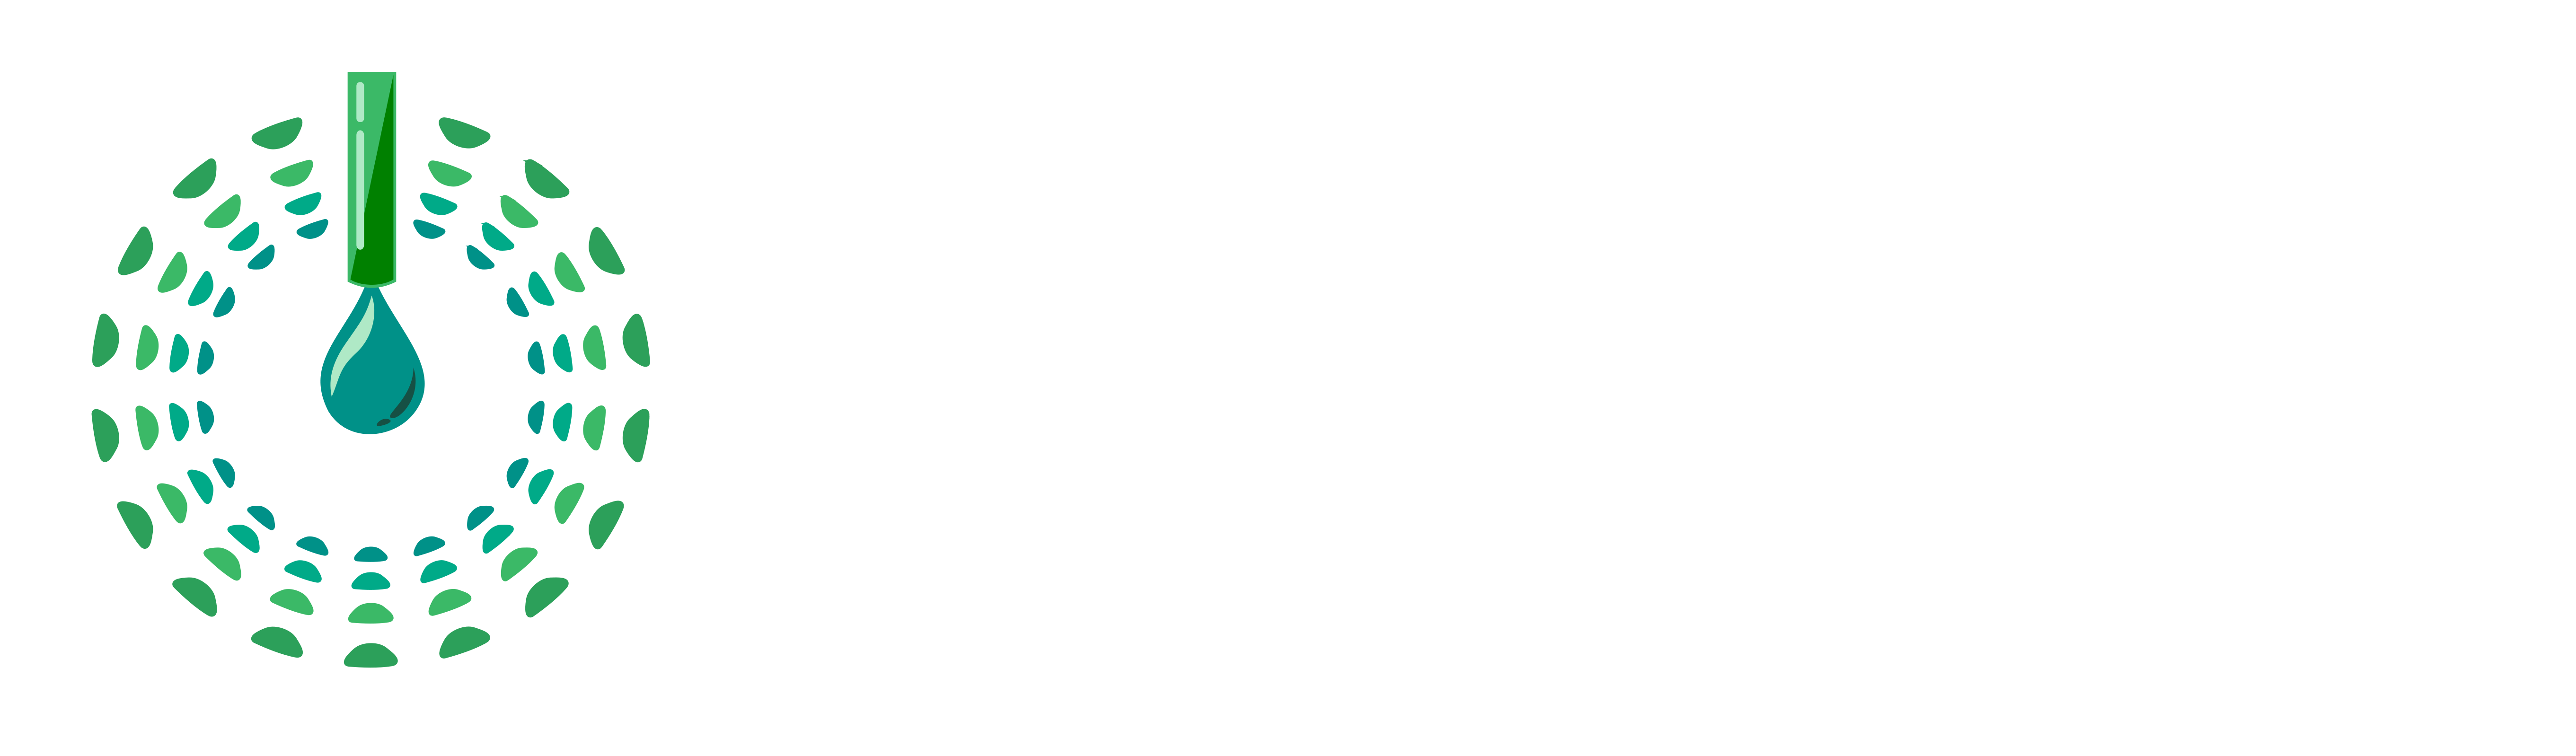 DropGen